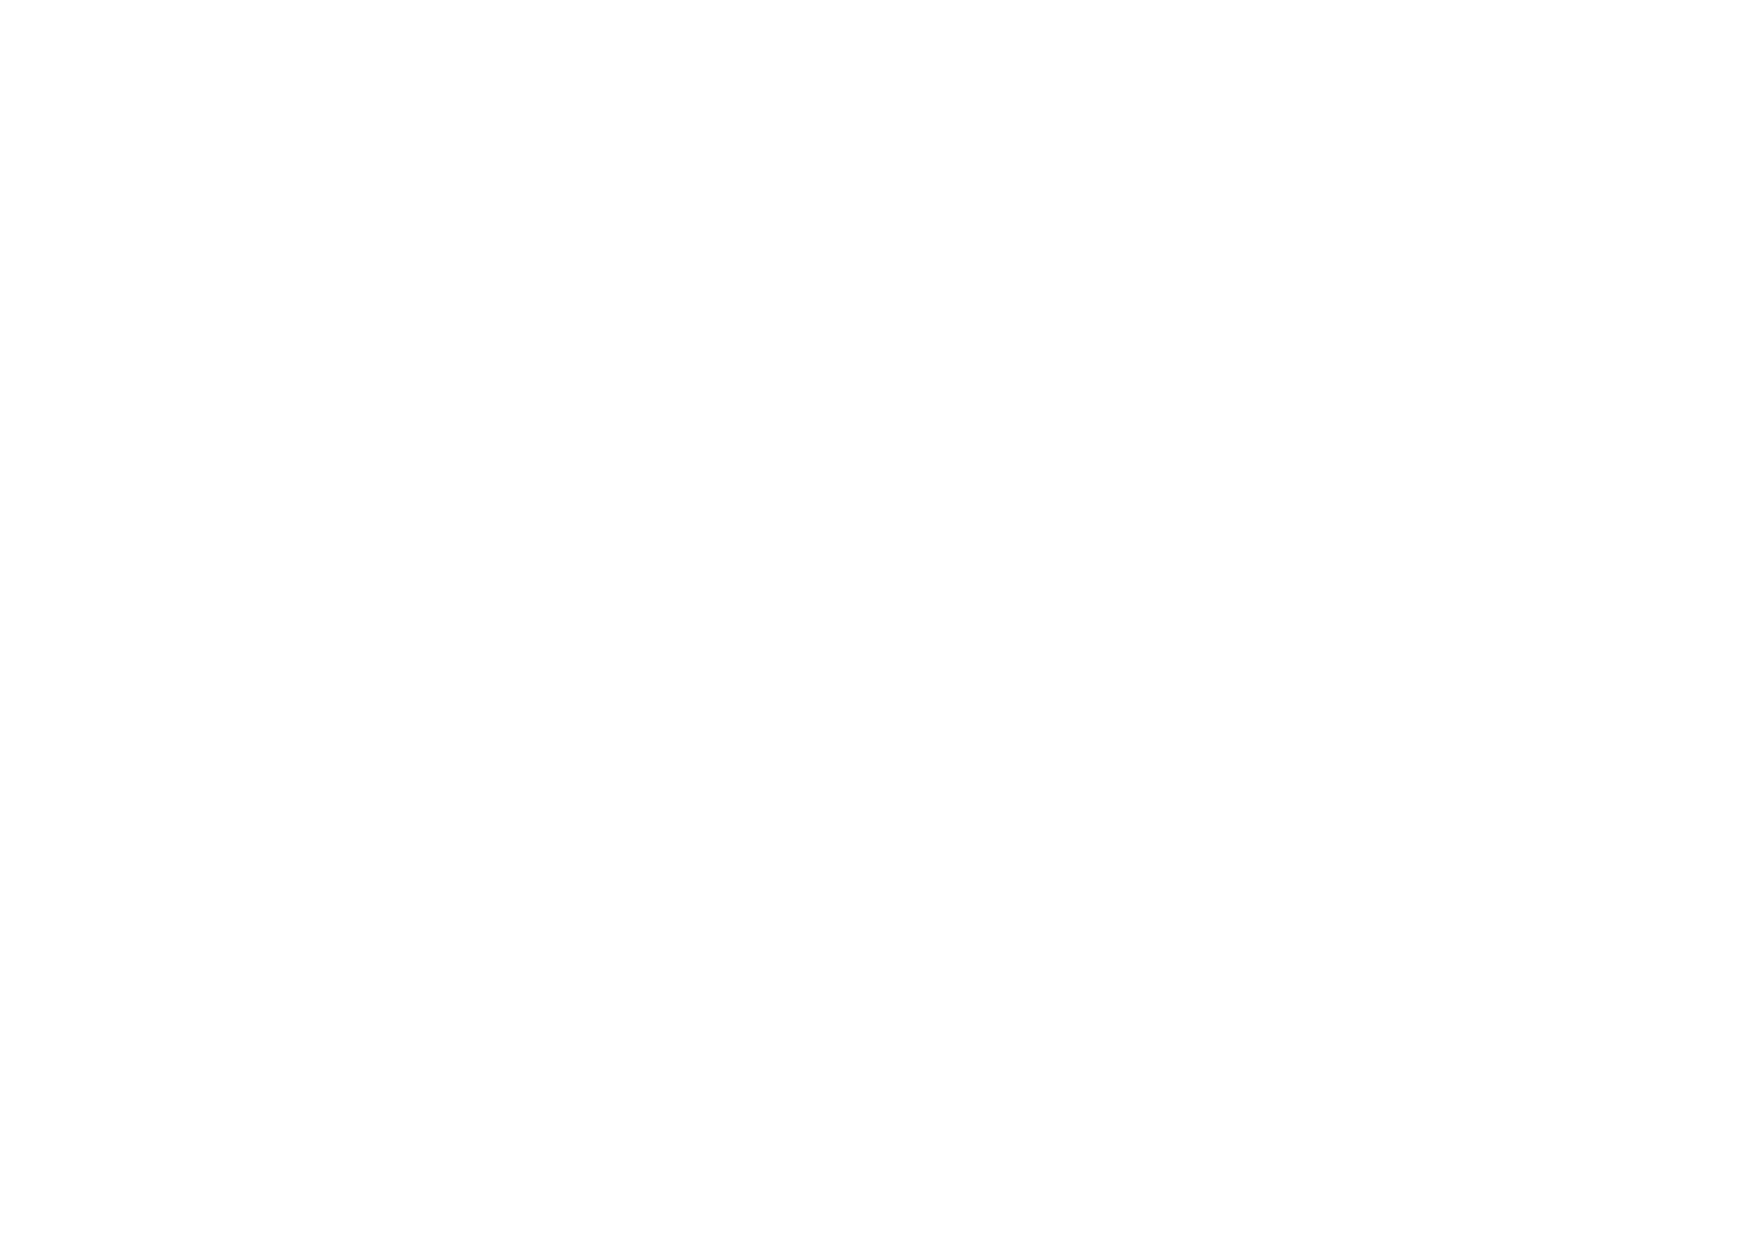 Verolme Special Equipment